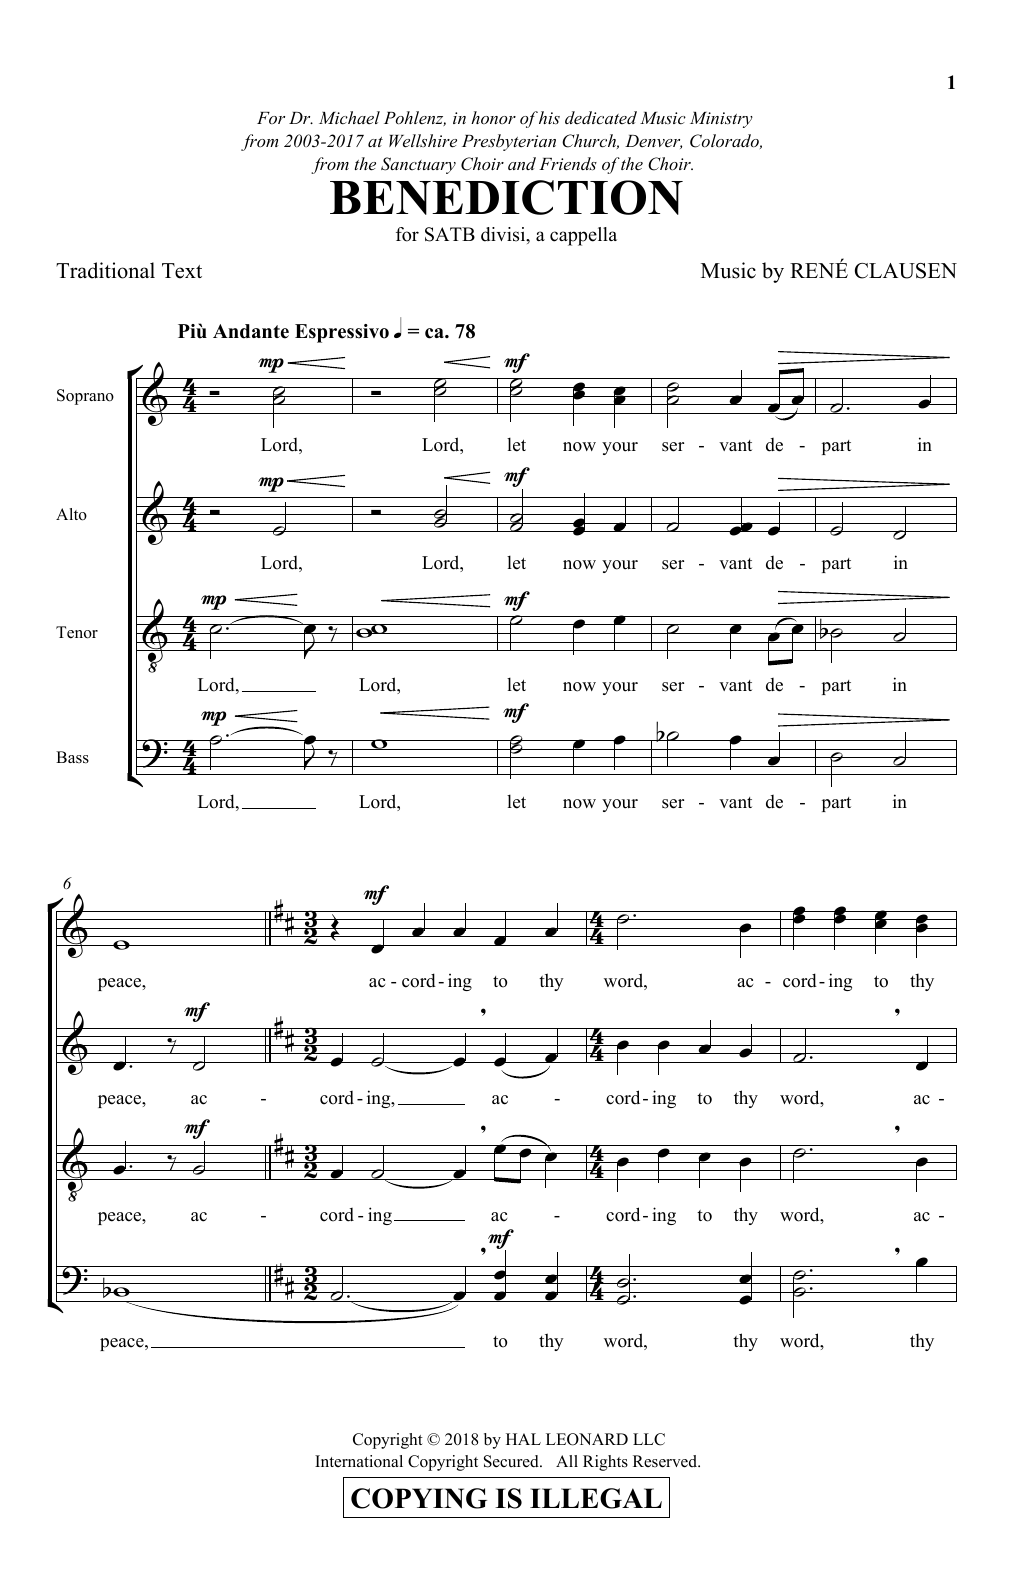 Download Rene Clausen Benediction Sheet Music